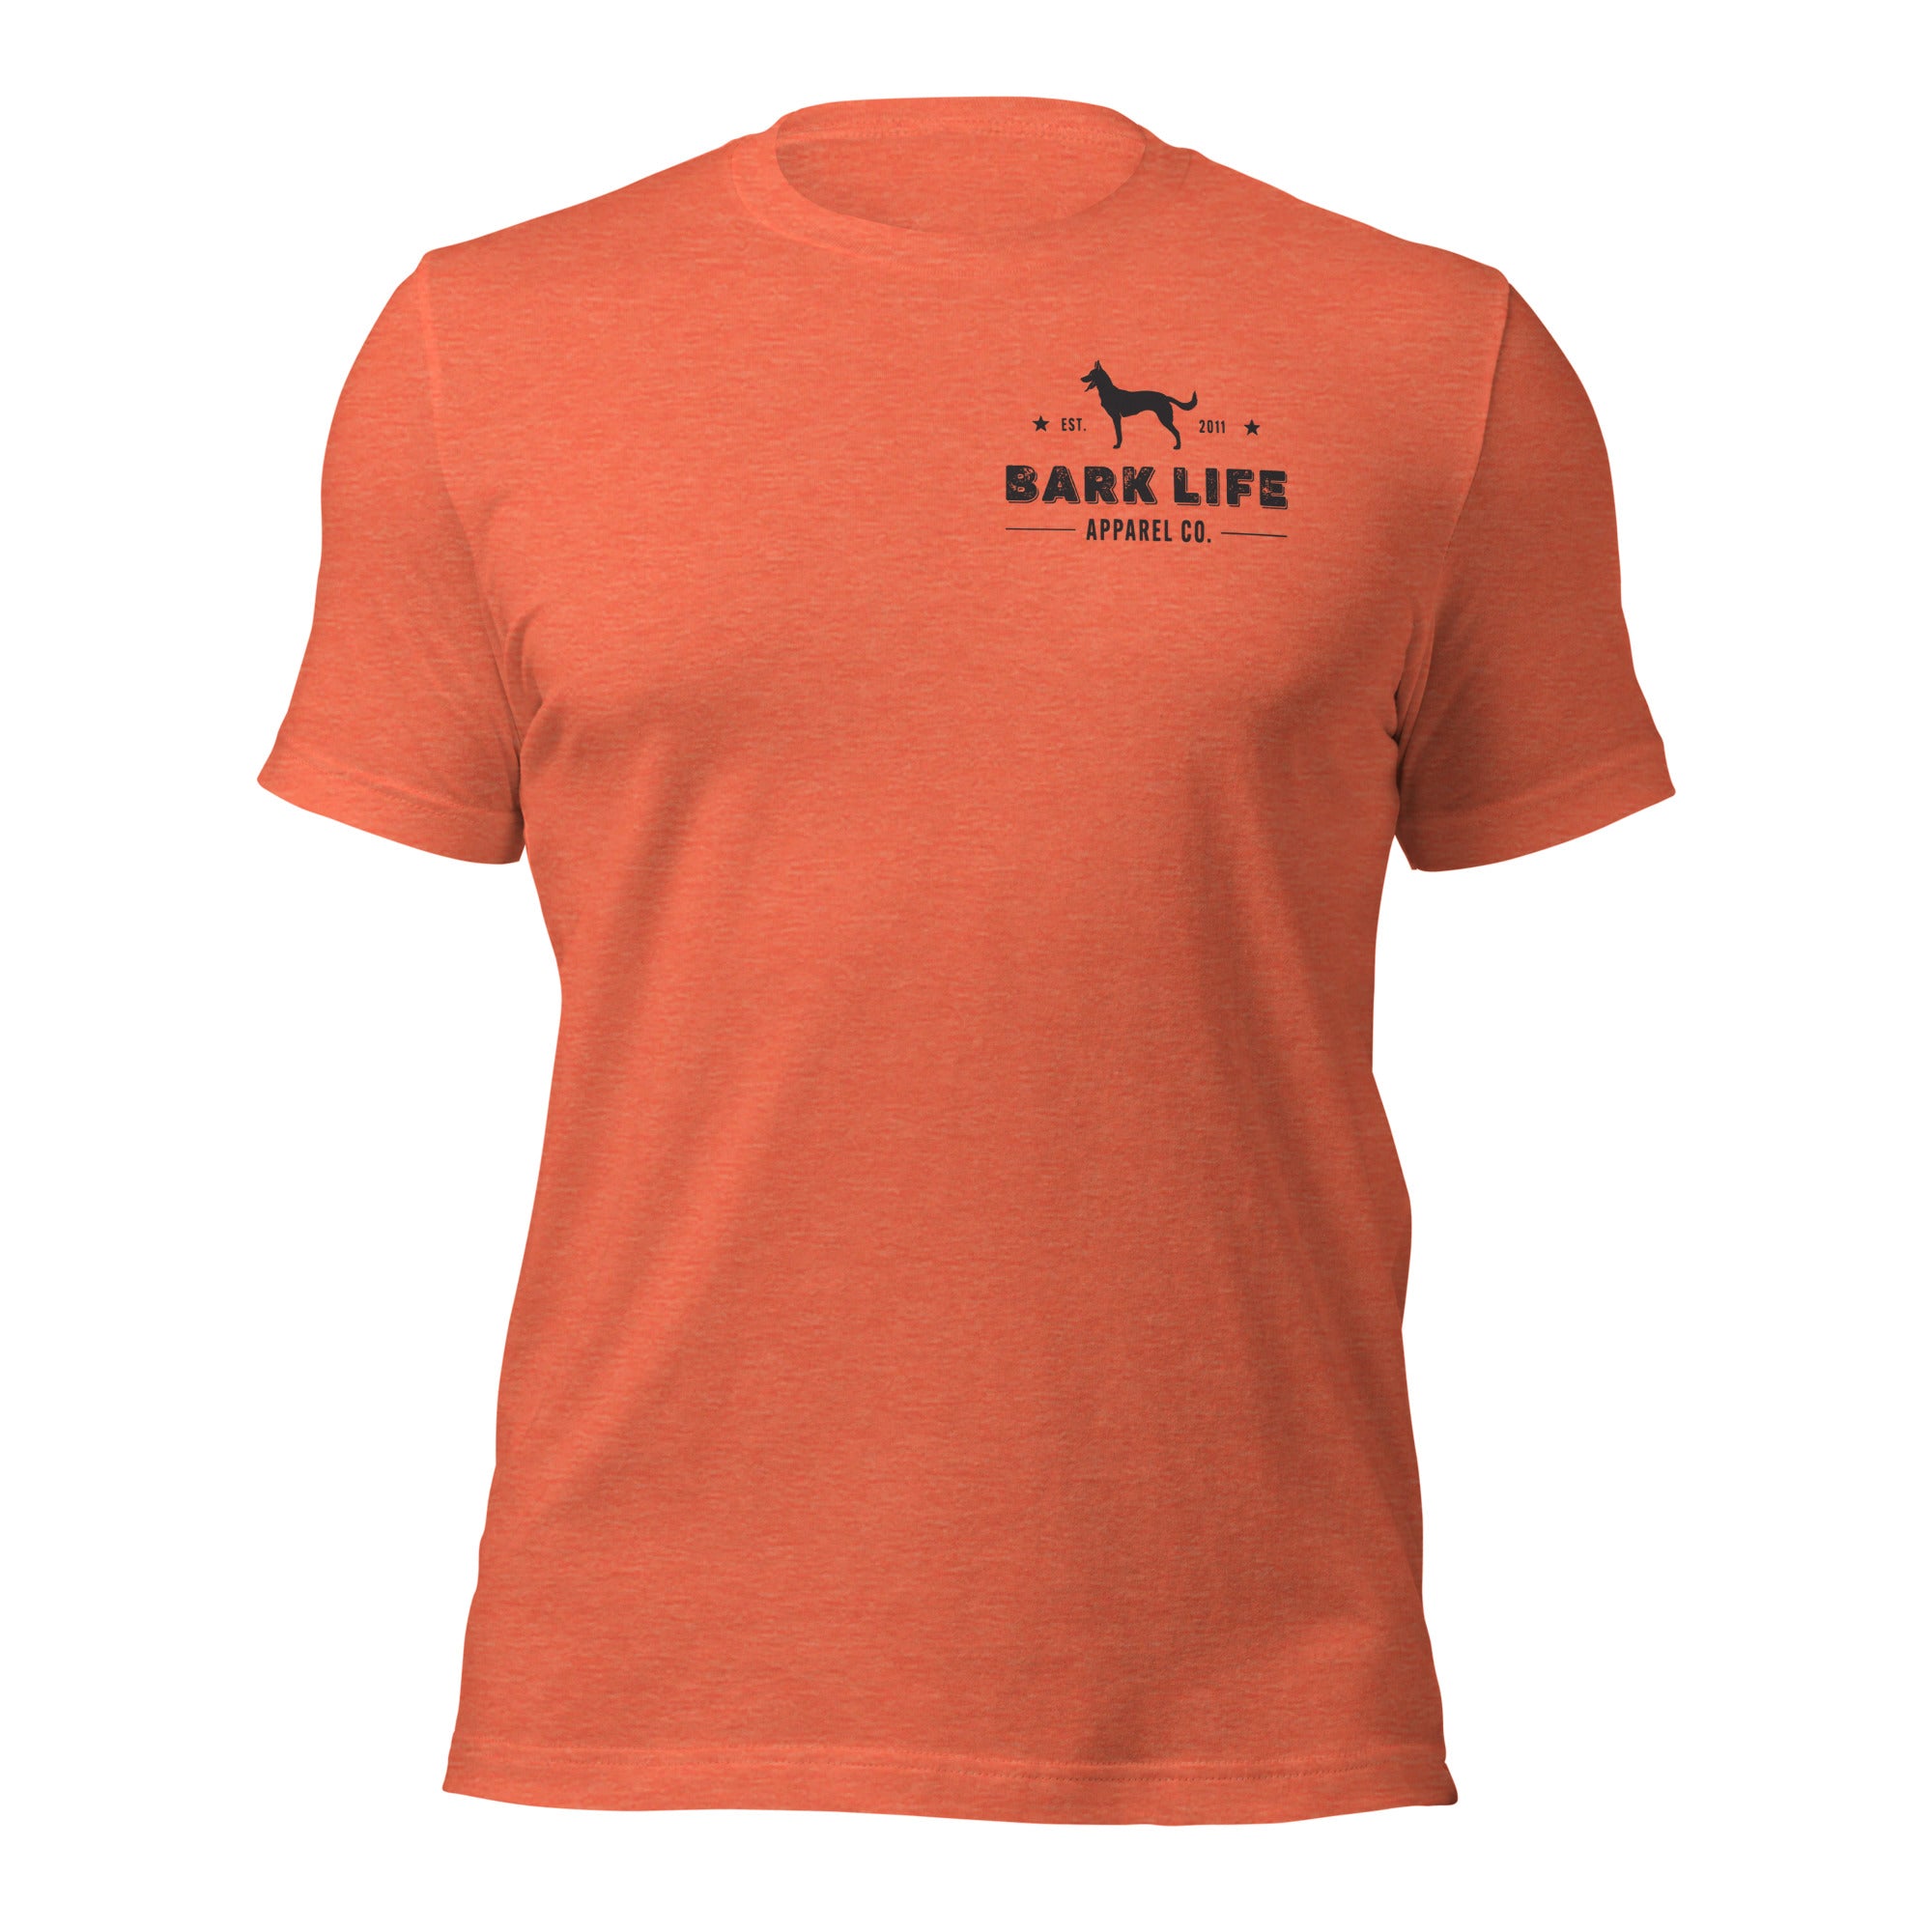 Malinois - Short Sleeve Cotton Tee Shirt